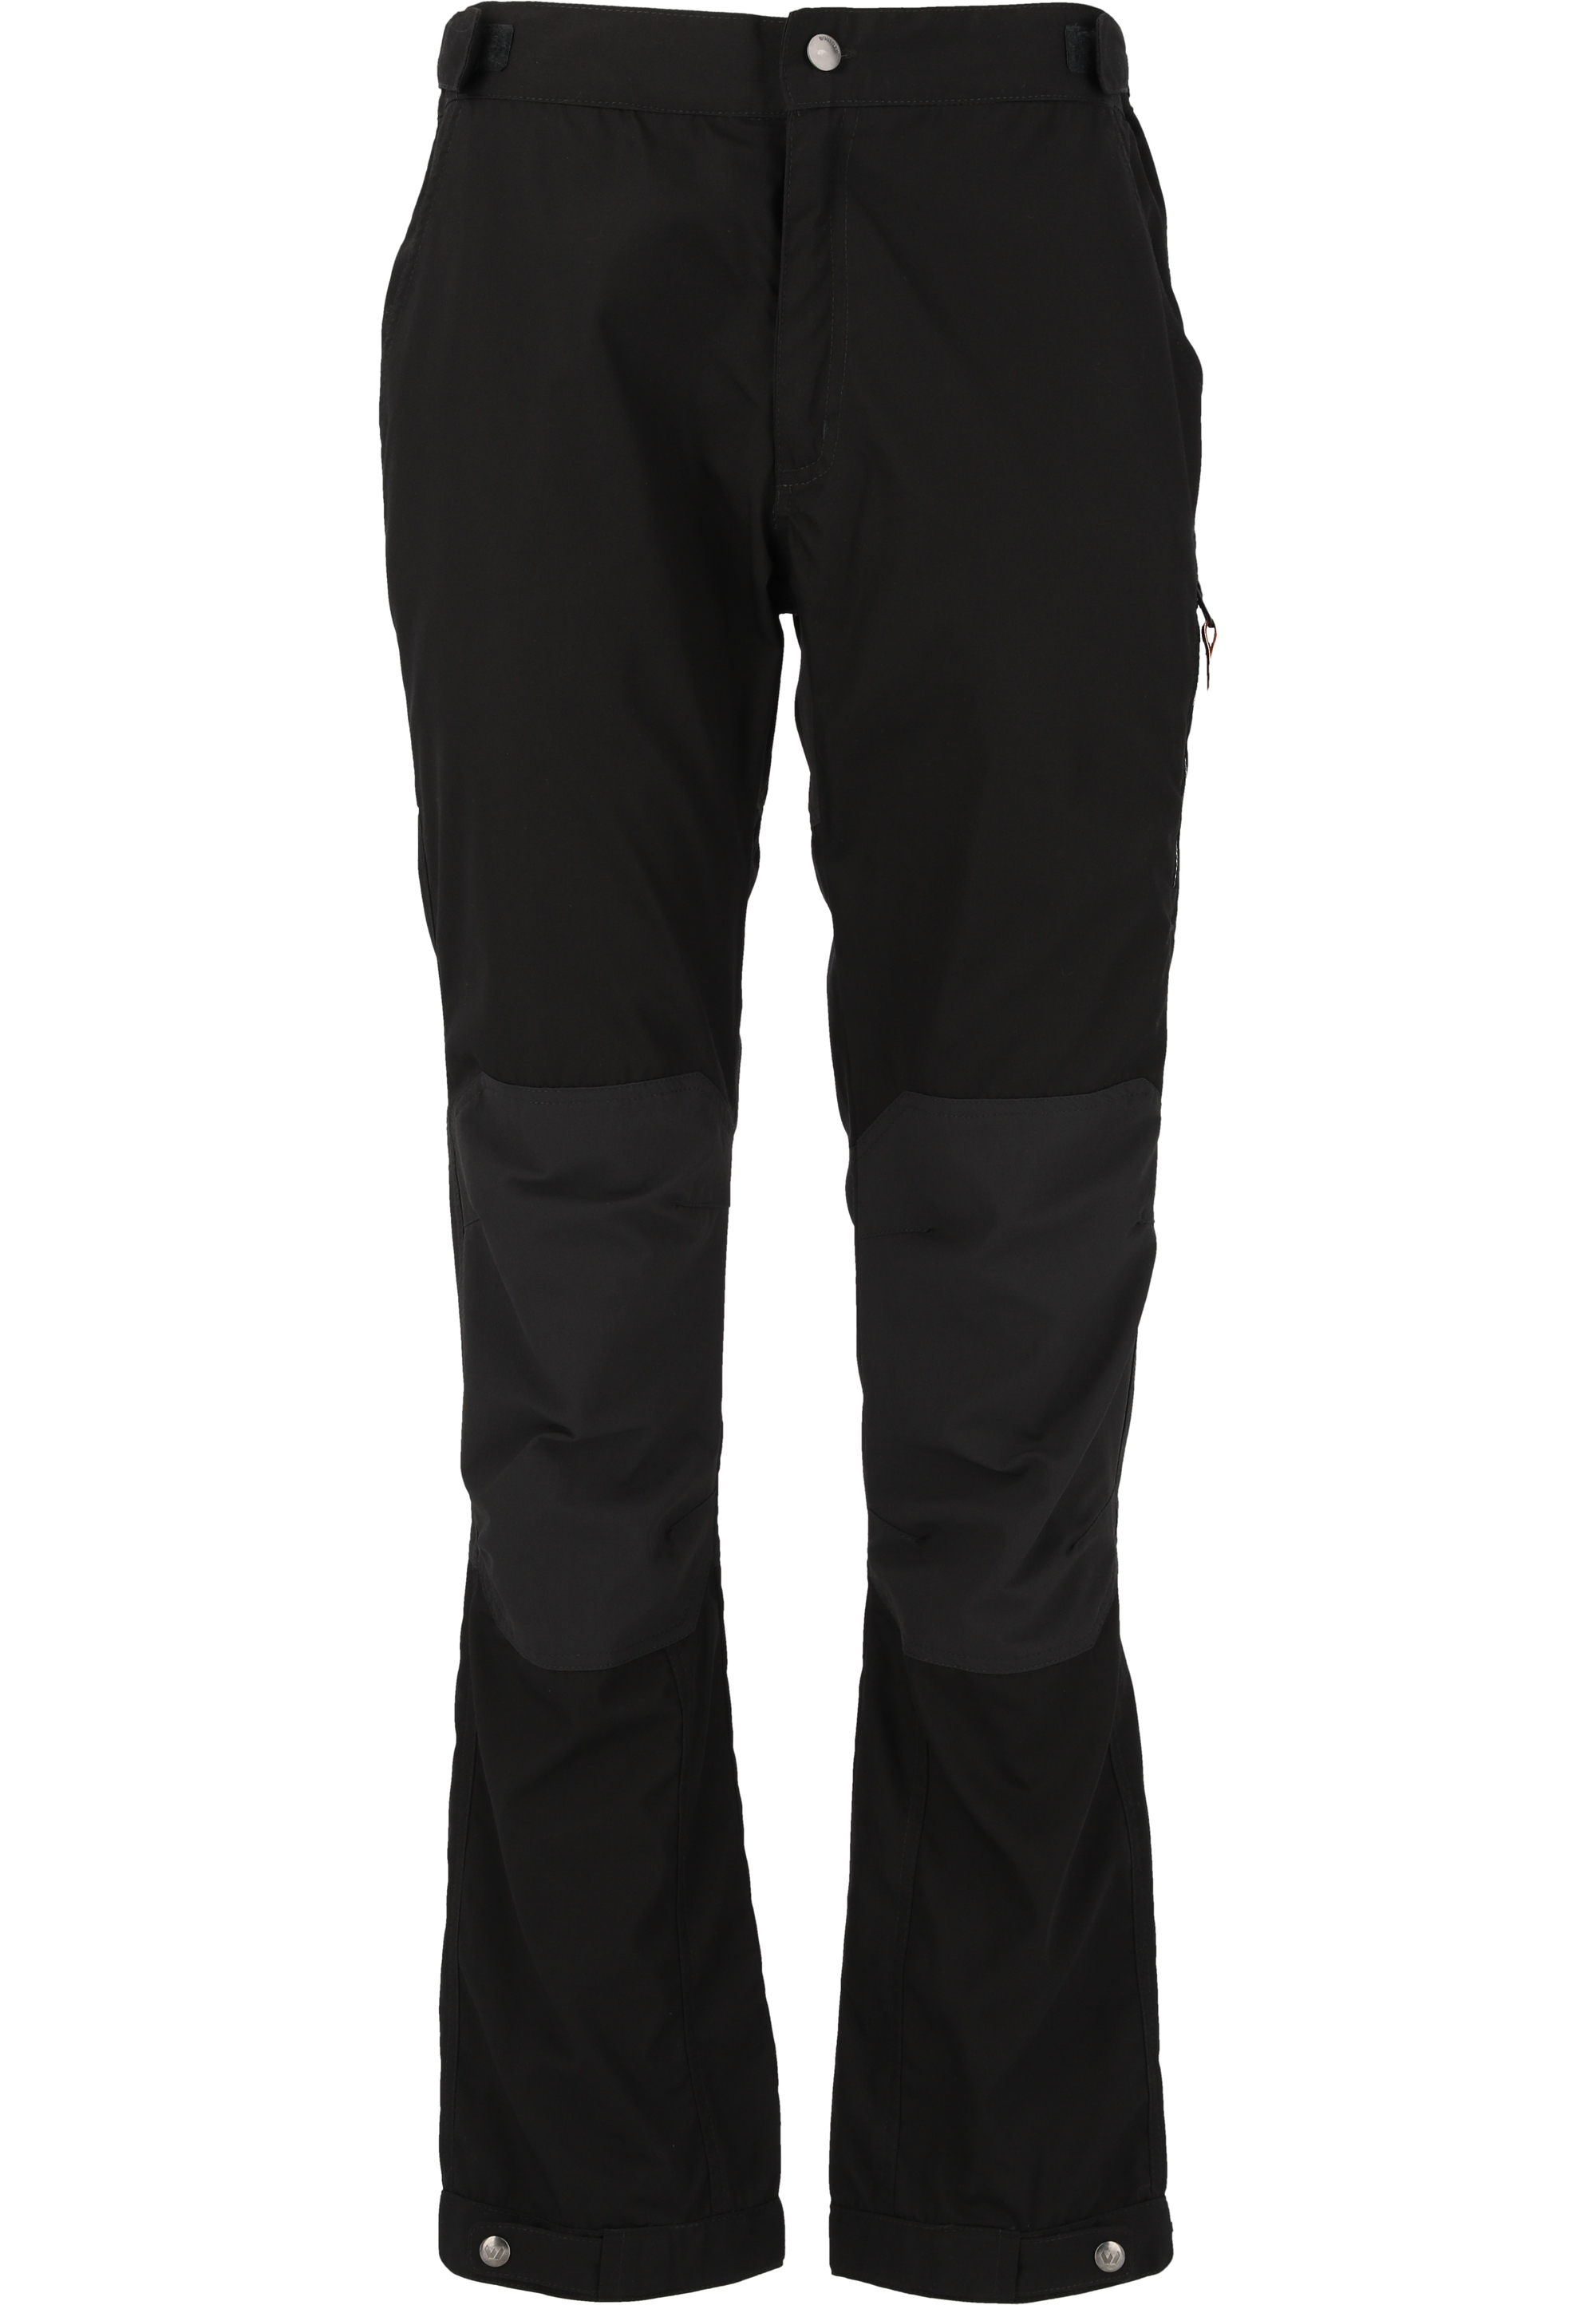 Тканевые брюки Whistler Outdoor Downey, цвет 1016 Phantom цена и фото